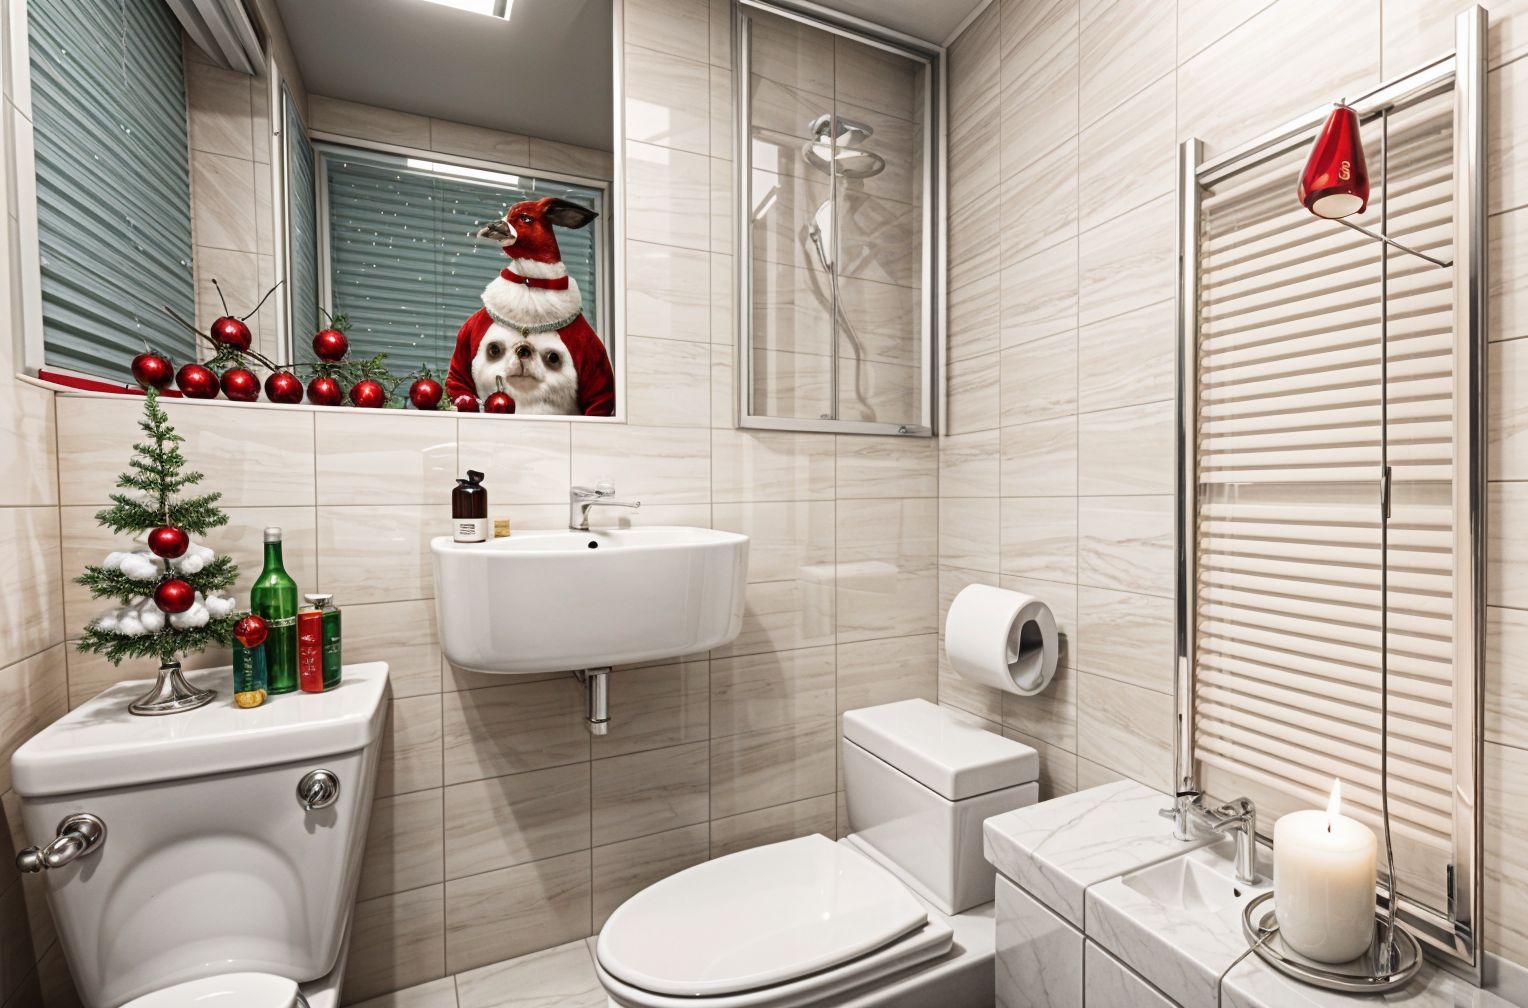 Christmas Toilet